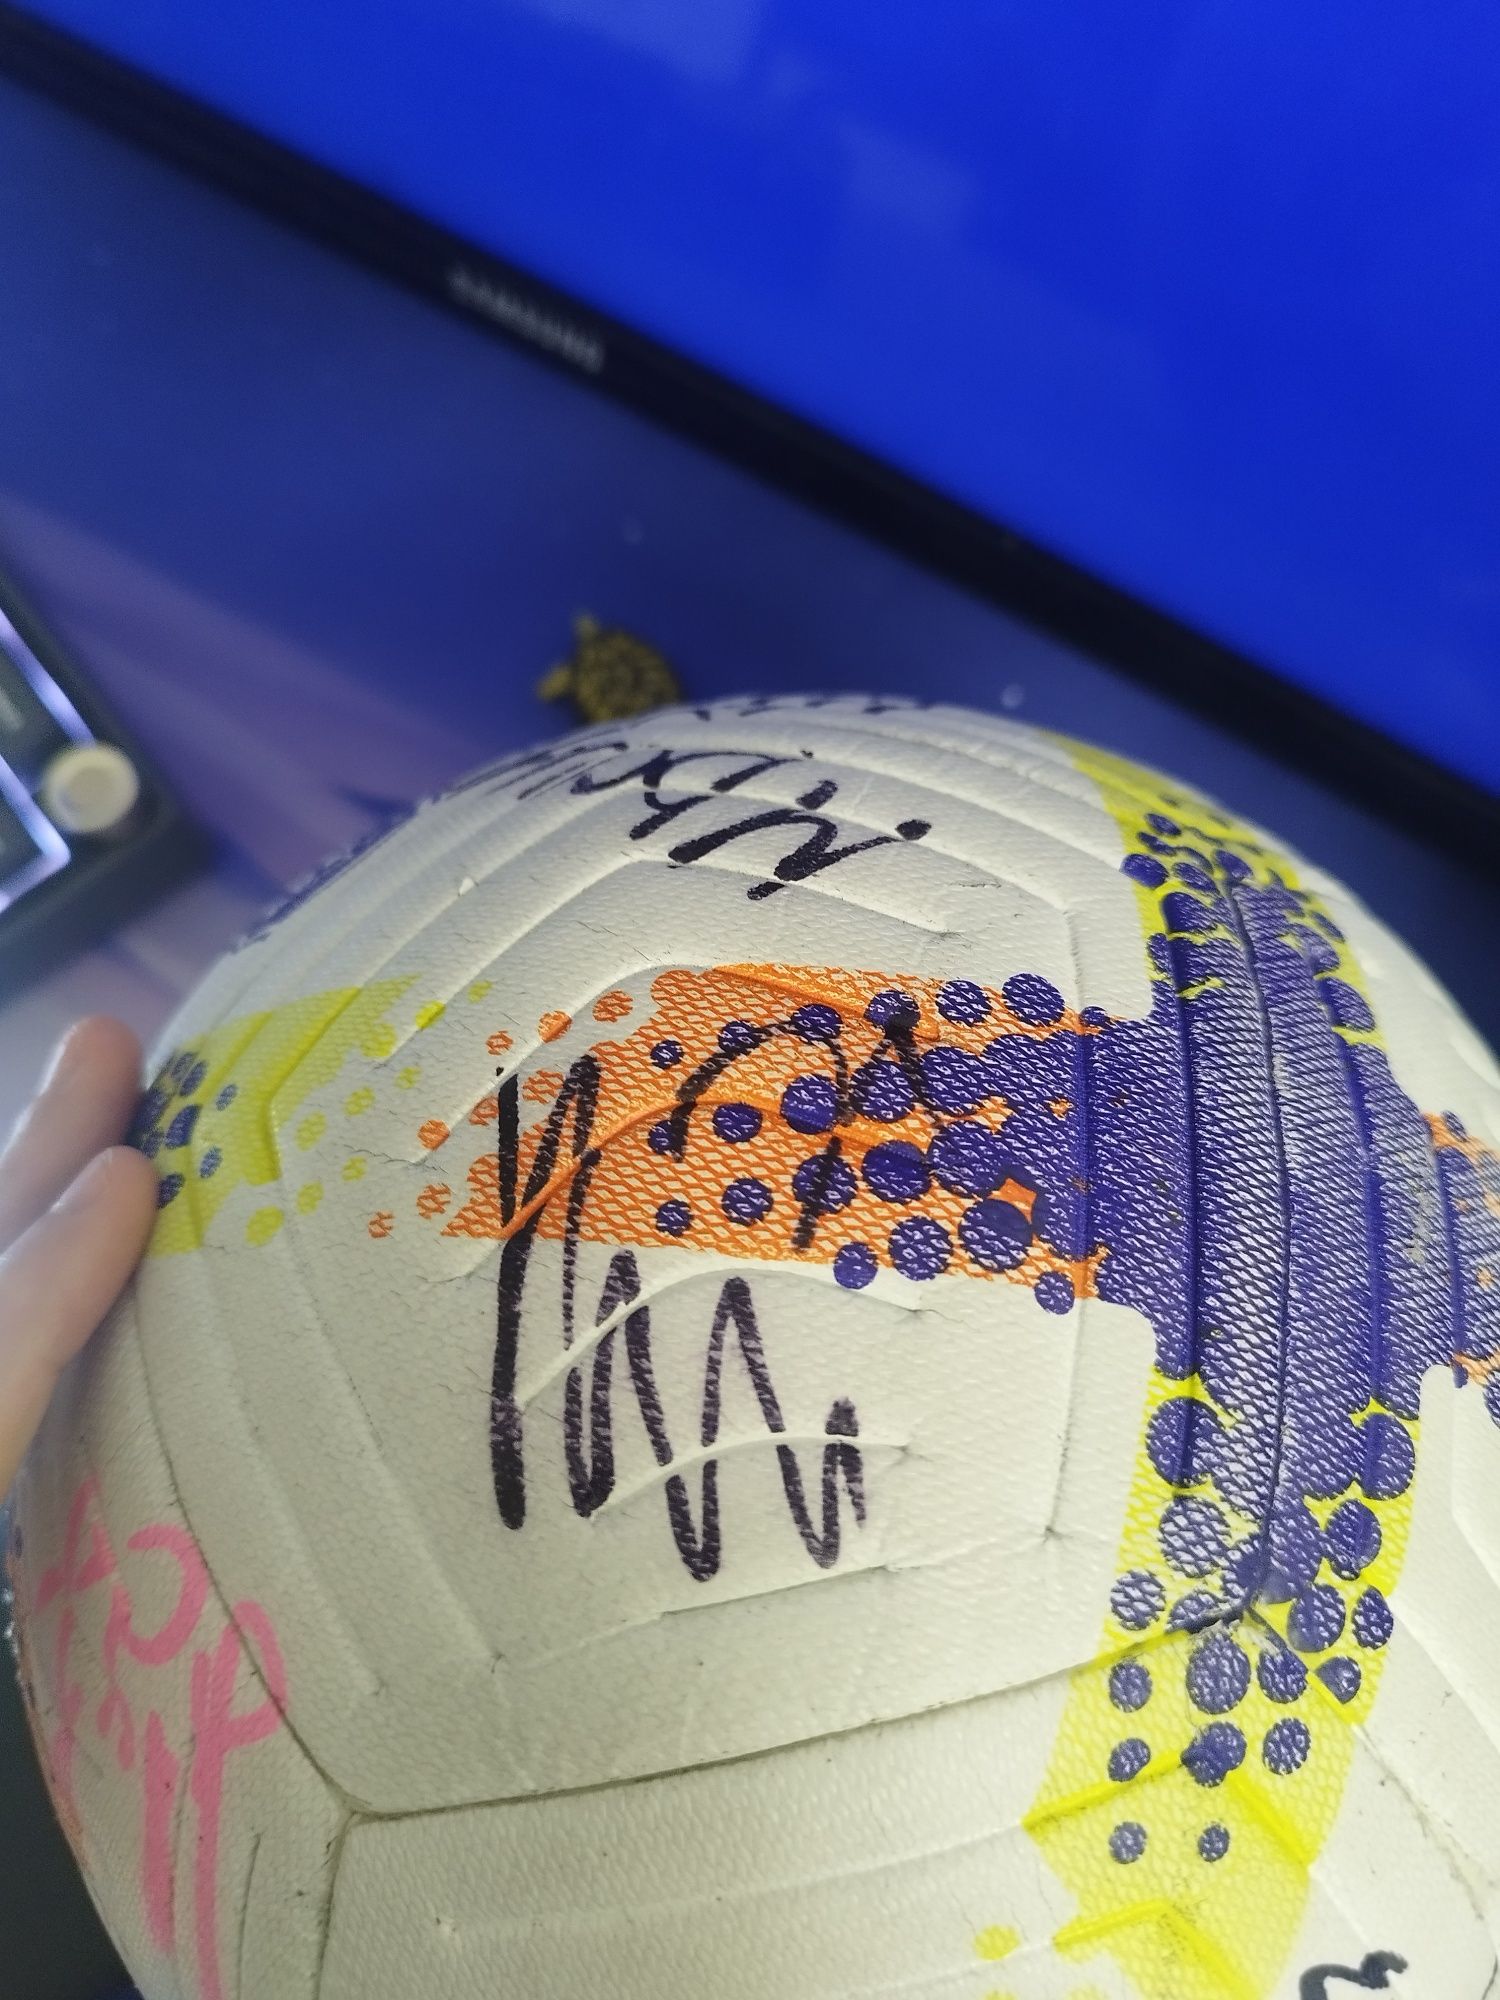 Мяч с подписями известных футболистов